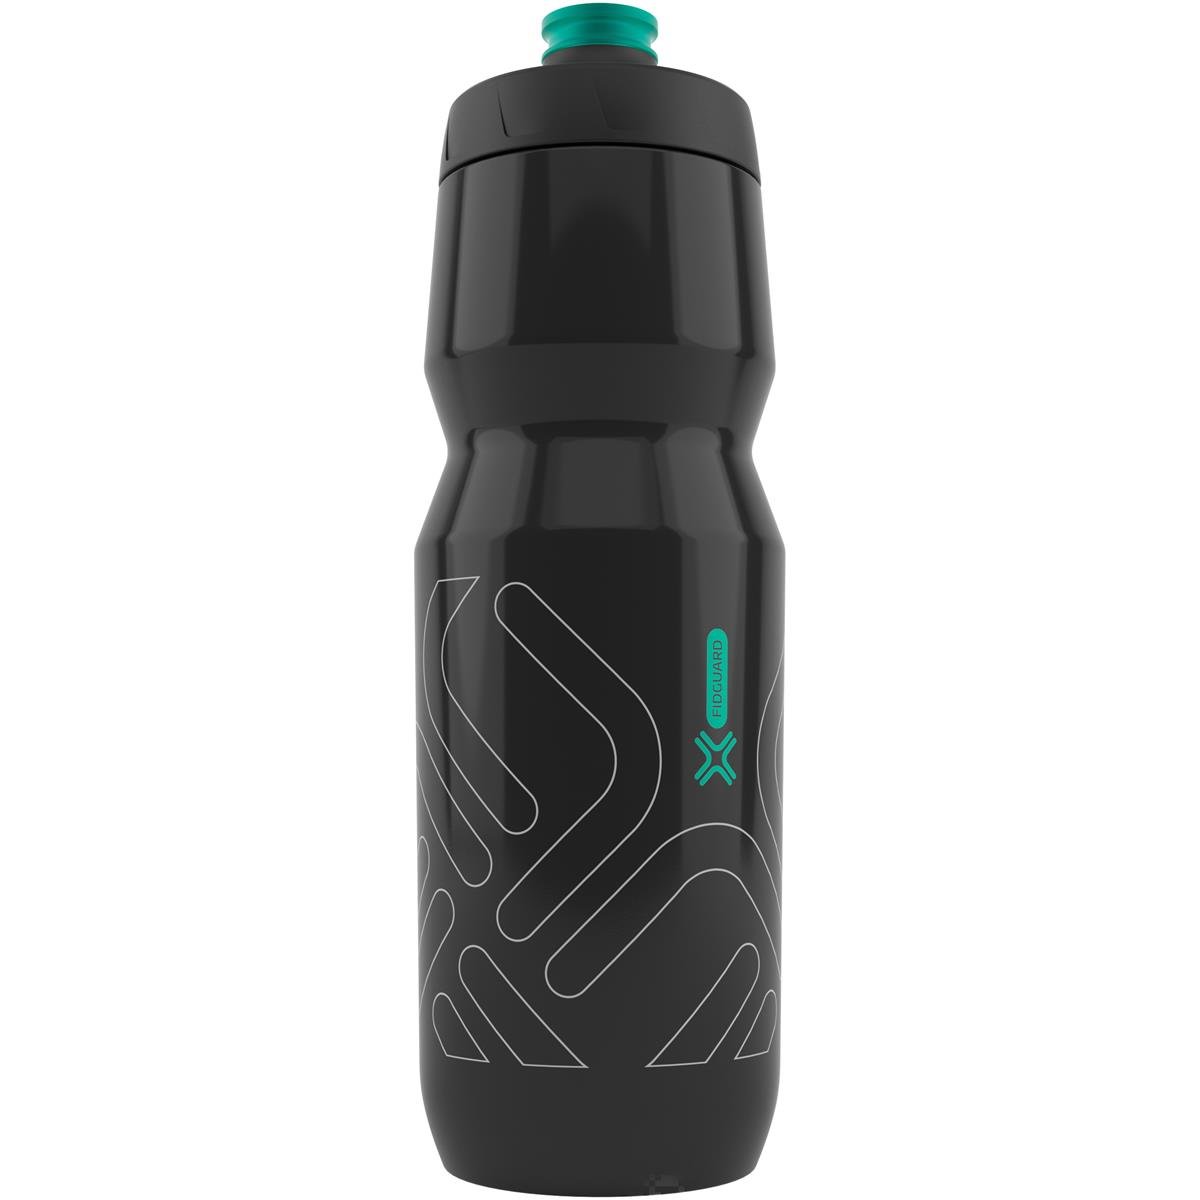 Fidlock Water Bottle Fidguard Transparent Black / Light Gray outline, 750 ml